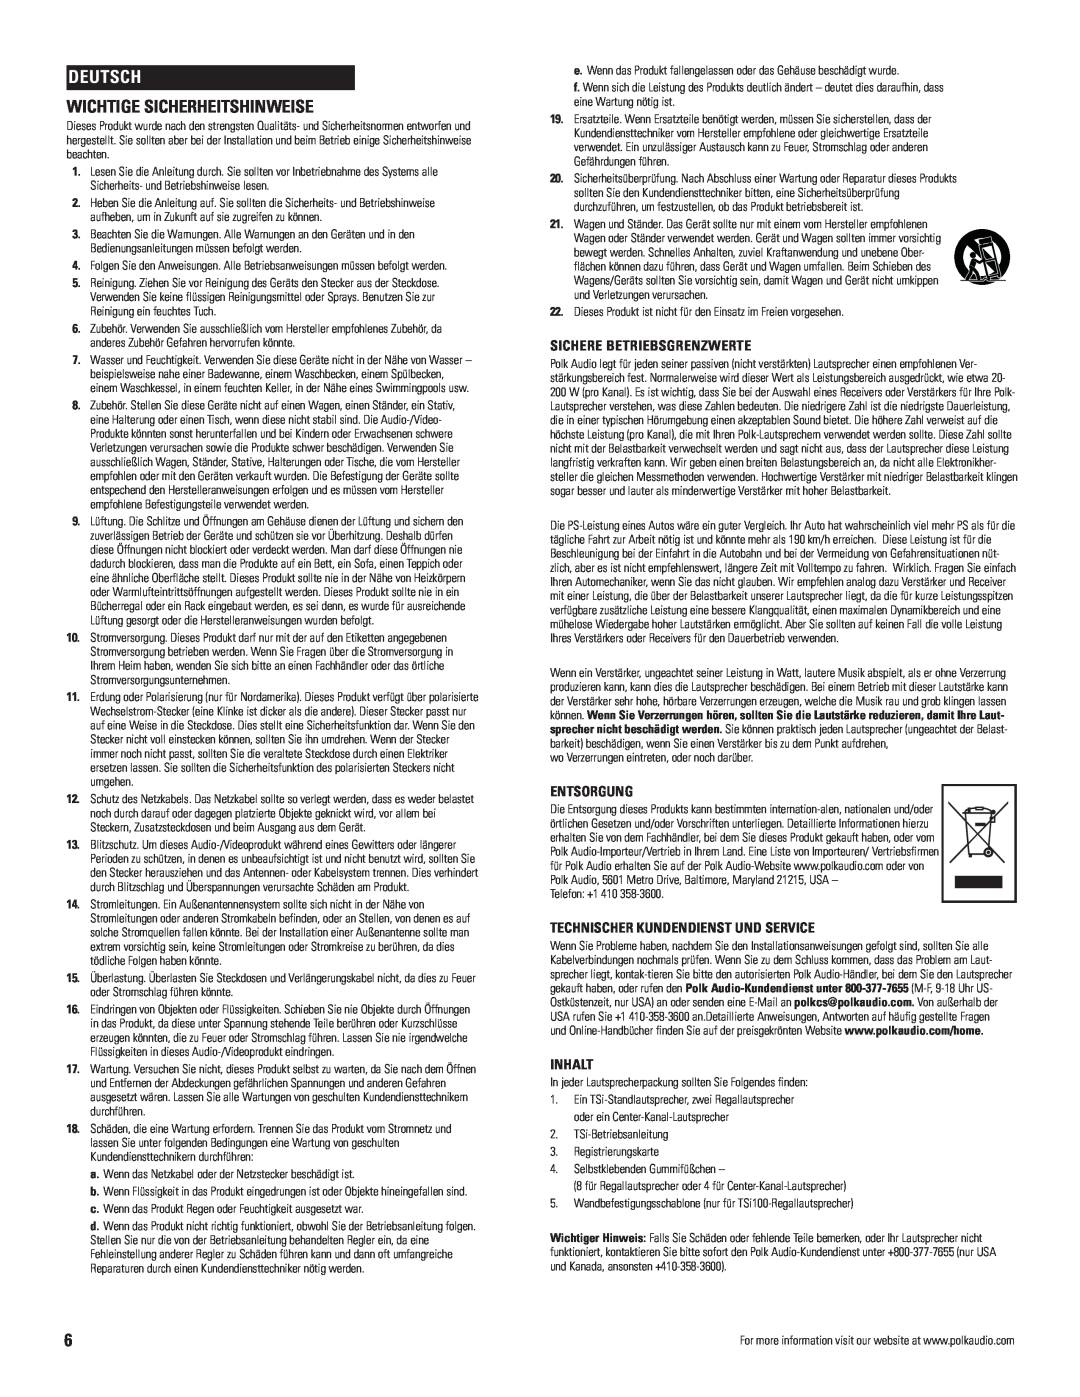 Polk Audio TSi owner manual Deutsch, Wichtige Sicherheitshinweise, Sichere Betriebsgrenzwerte, Entsorgung, Inhalt 